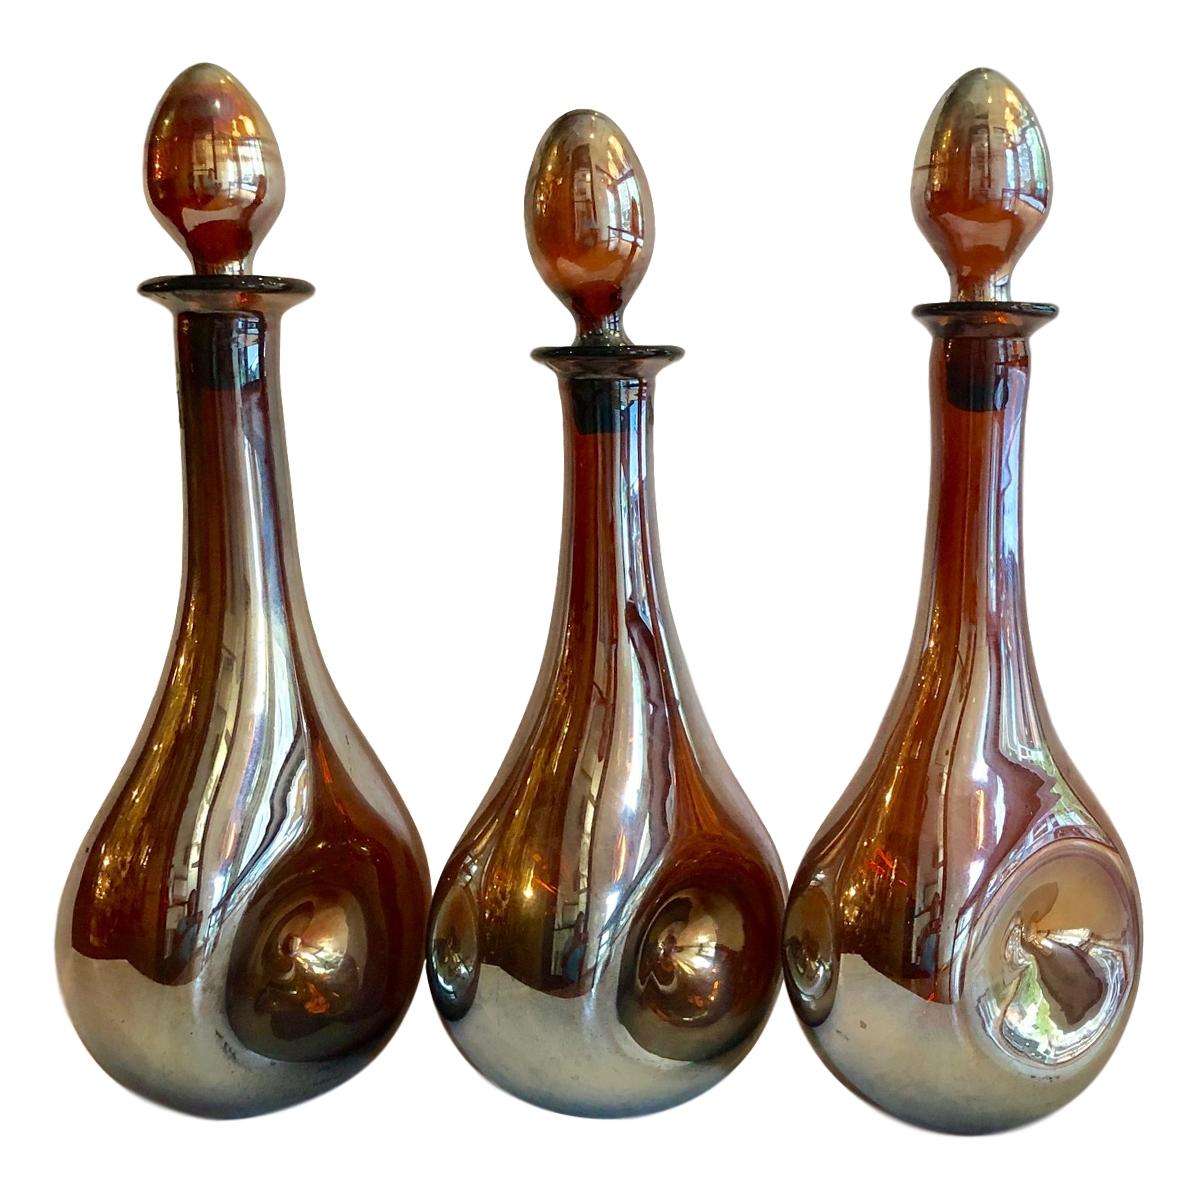 Ein Satz von drei französischen Dekantern aus irisierendem Glas mit Stöpseln aus der Zeit um 1940. Einzelverkauf.

Abmessungen:
Höhe 17